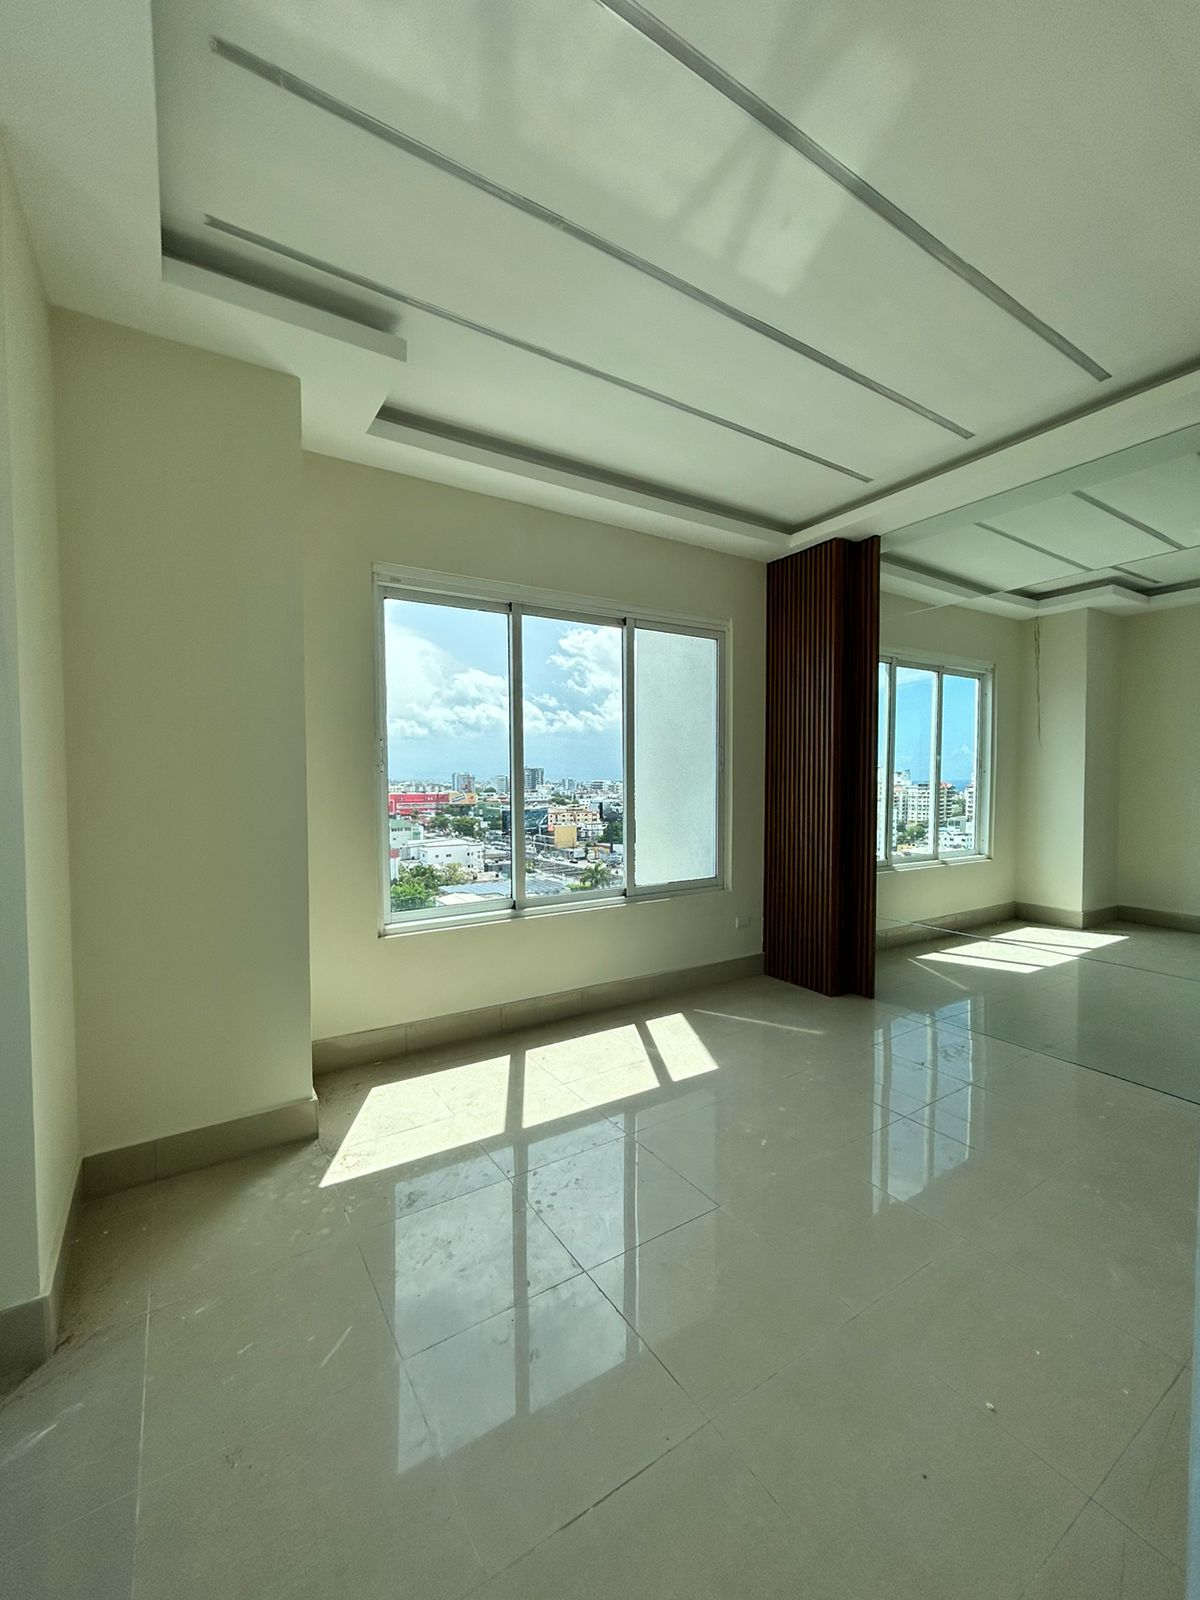 En venta penthouse en piso 10mo. nivel la propiedad abarca el piso com Foto 7207510-1.jpg